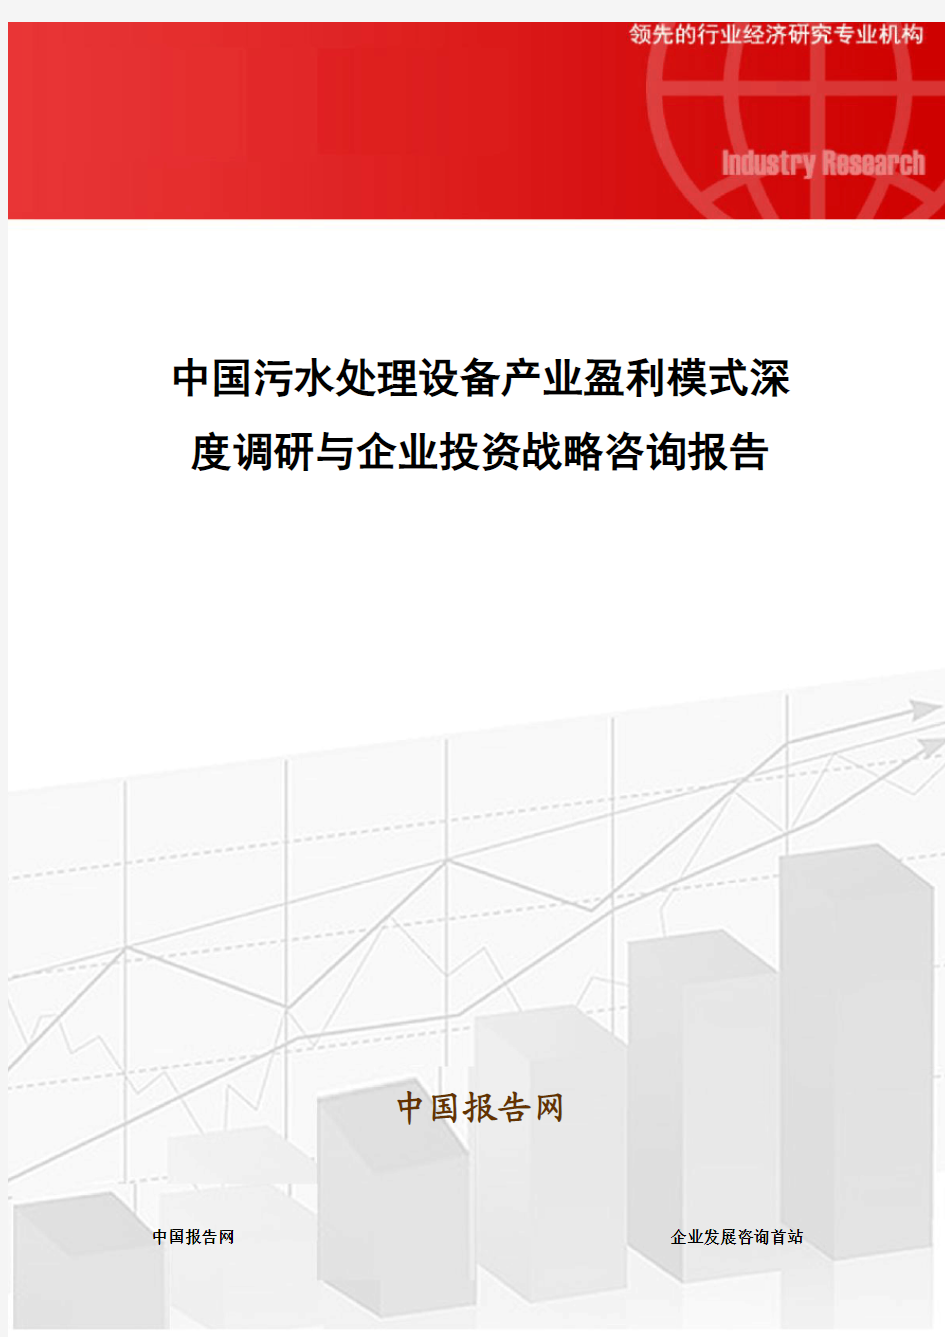 中国污水处理设备产业盈利模式深度调研与企业投资战略咨询报告